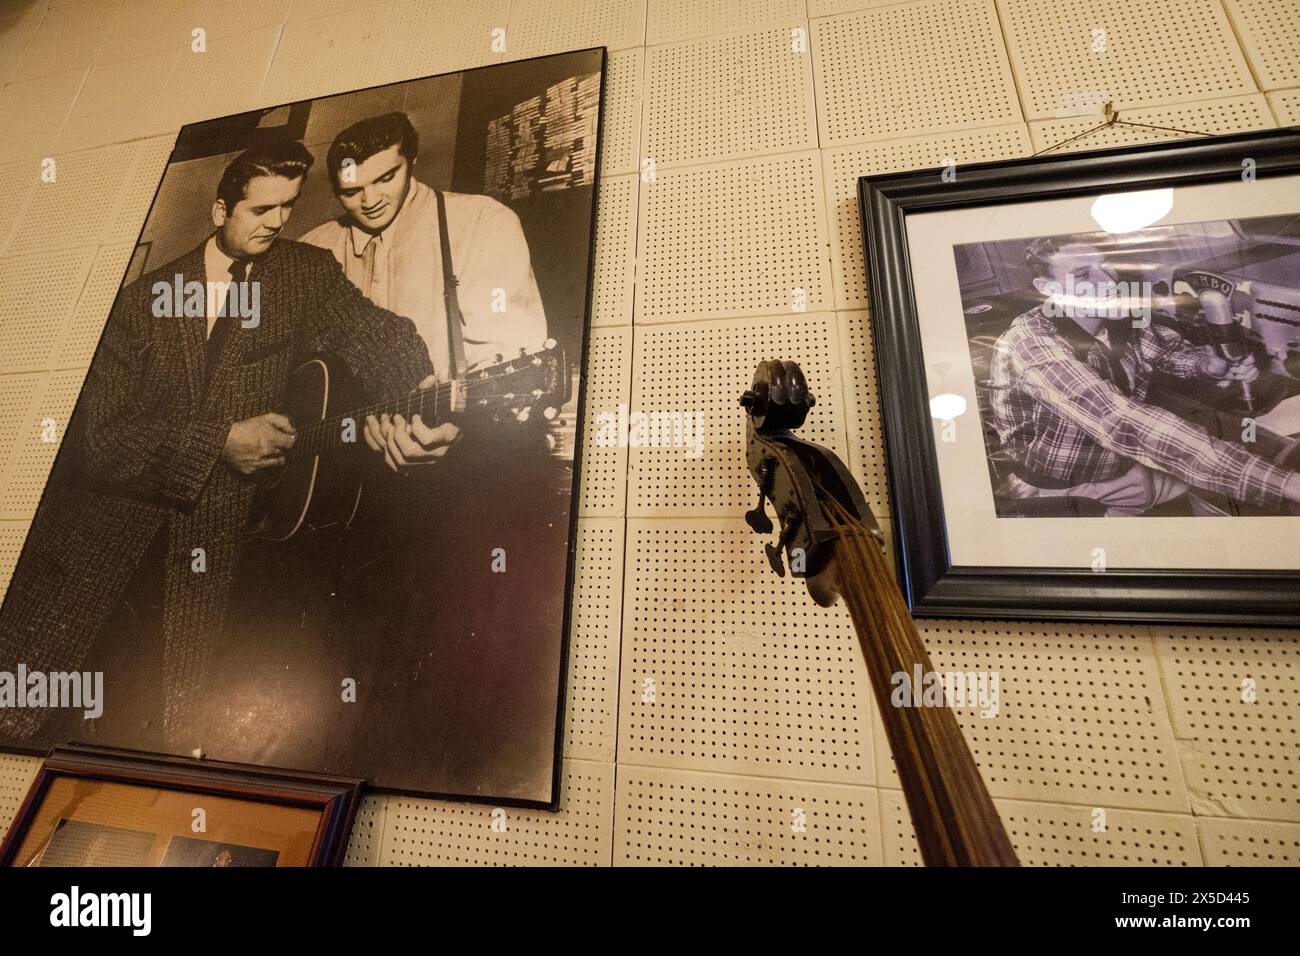 Sam Phillips e Elvis Presley in foto al Sun Studio di Memphis, Tennessee, USA. Foto Stock